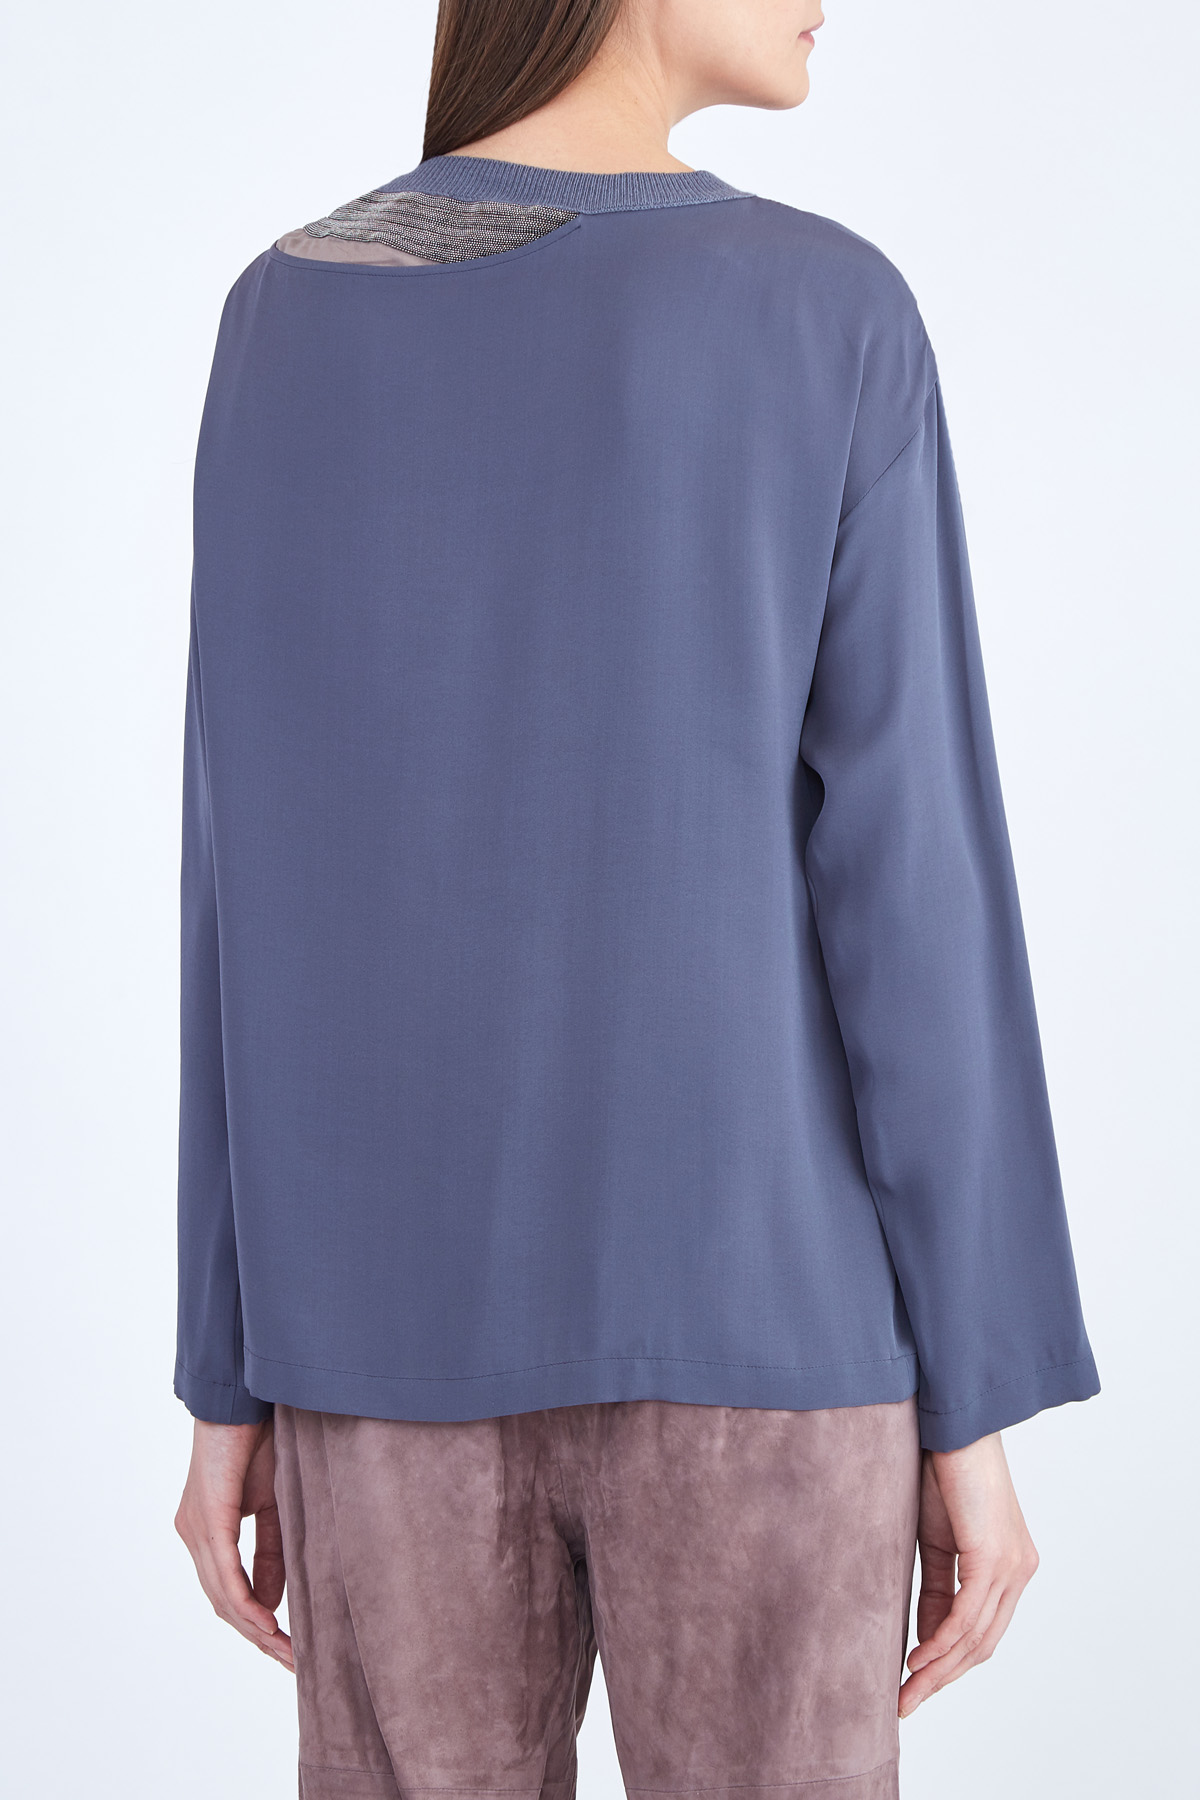 Шелковая блузка с трикотажным воротом, разрезом и цепочками бусин FABIANA FILIPPI, цвет синий, размер 44 - фото 4